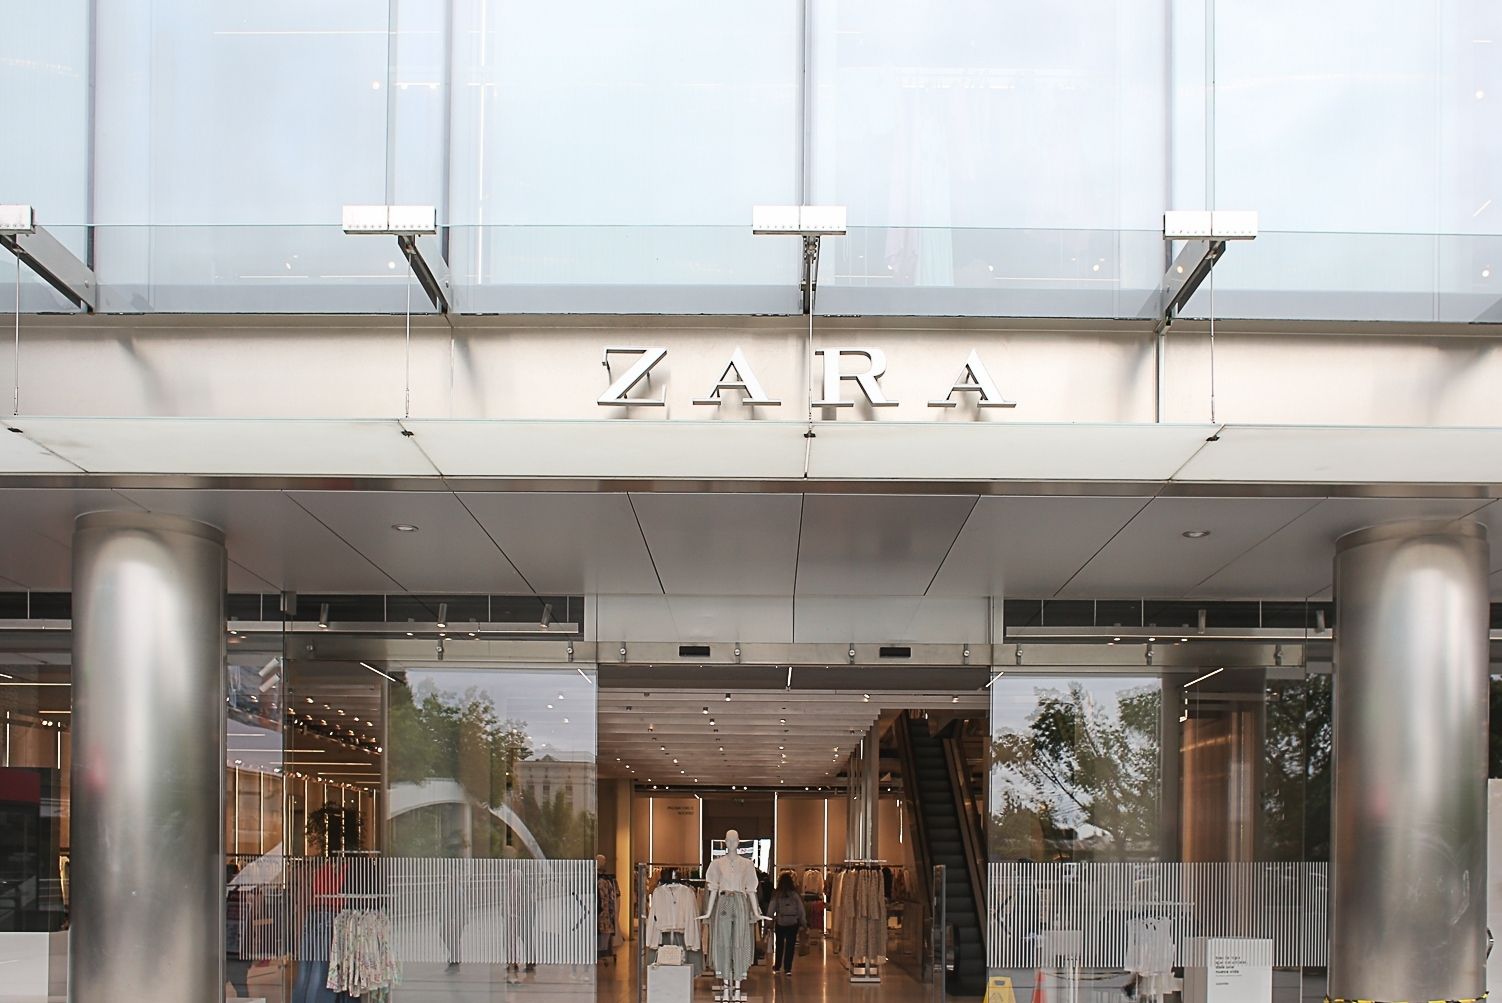 Já pode localizar peças de roupa e reservar provadores nas lojas da Zara  com uma App – NiT